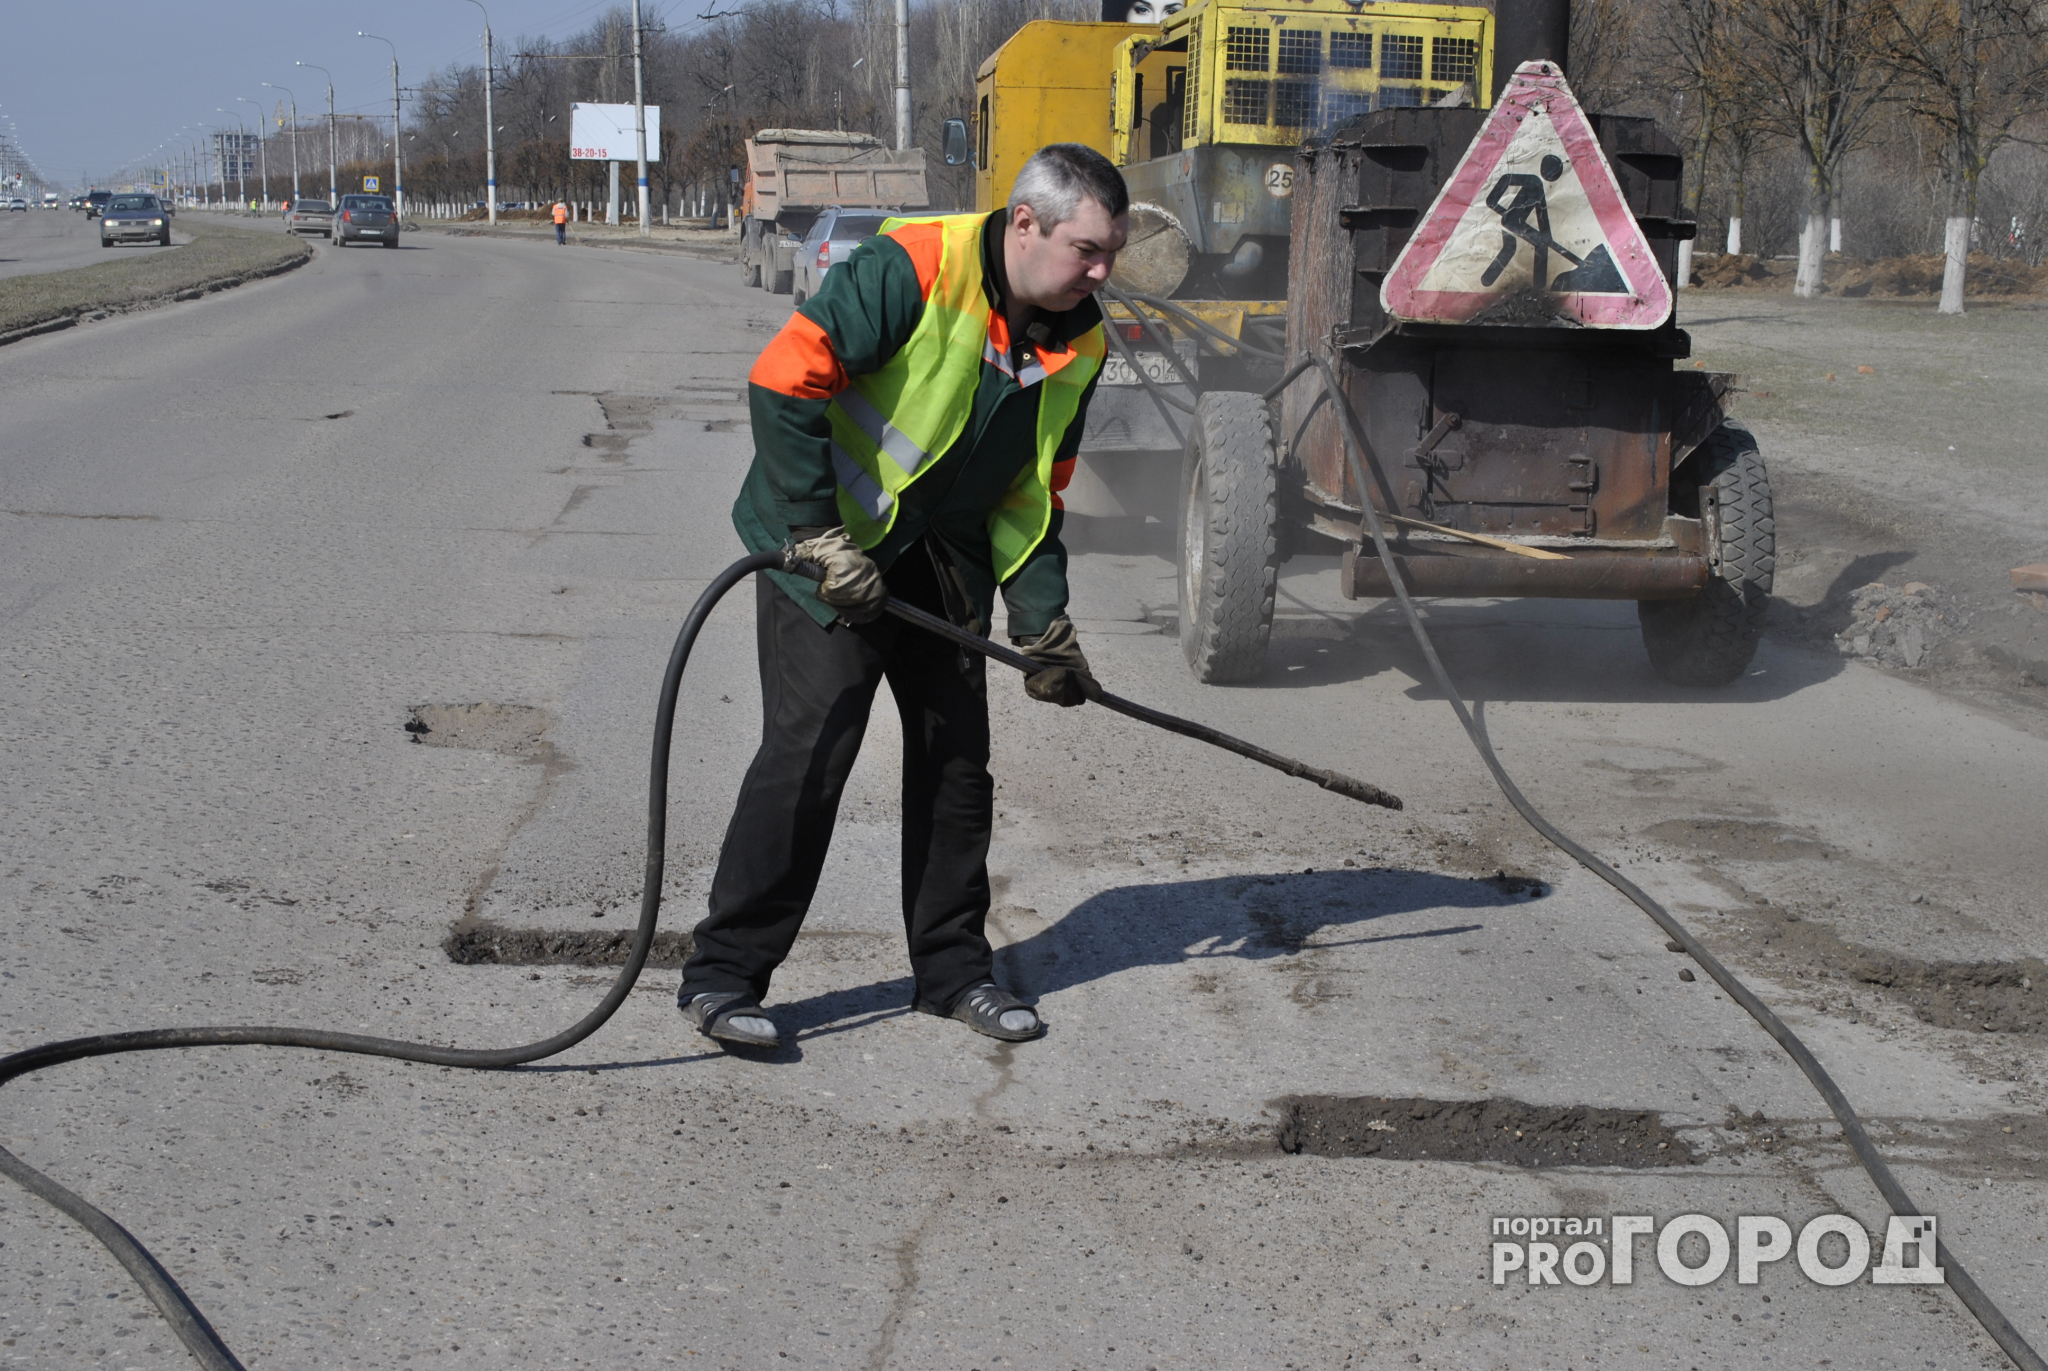 Суд обязал администрацию Нижнего Новгорода отремонтировать дорогу